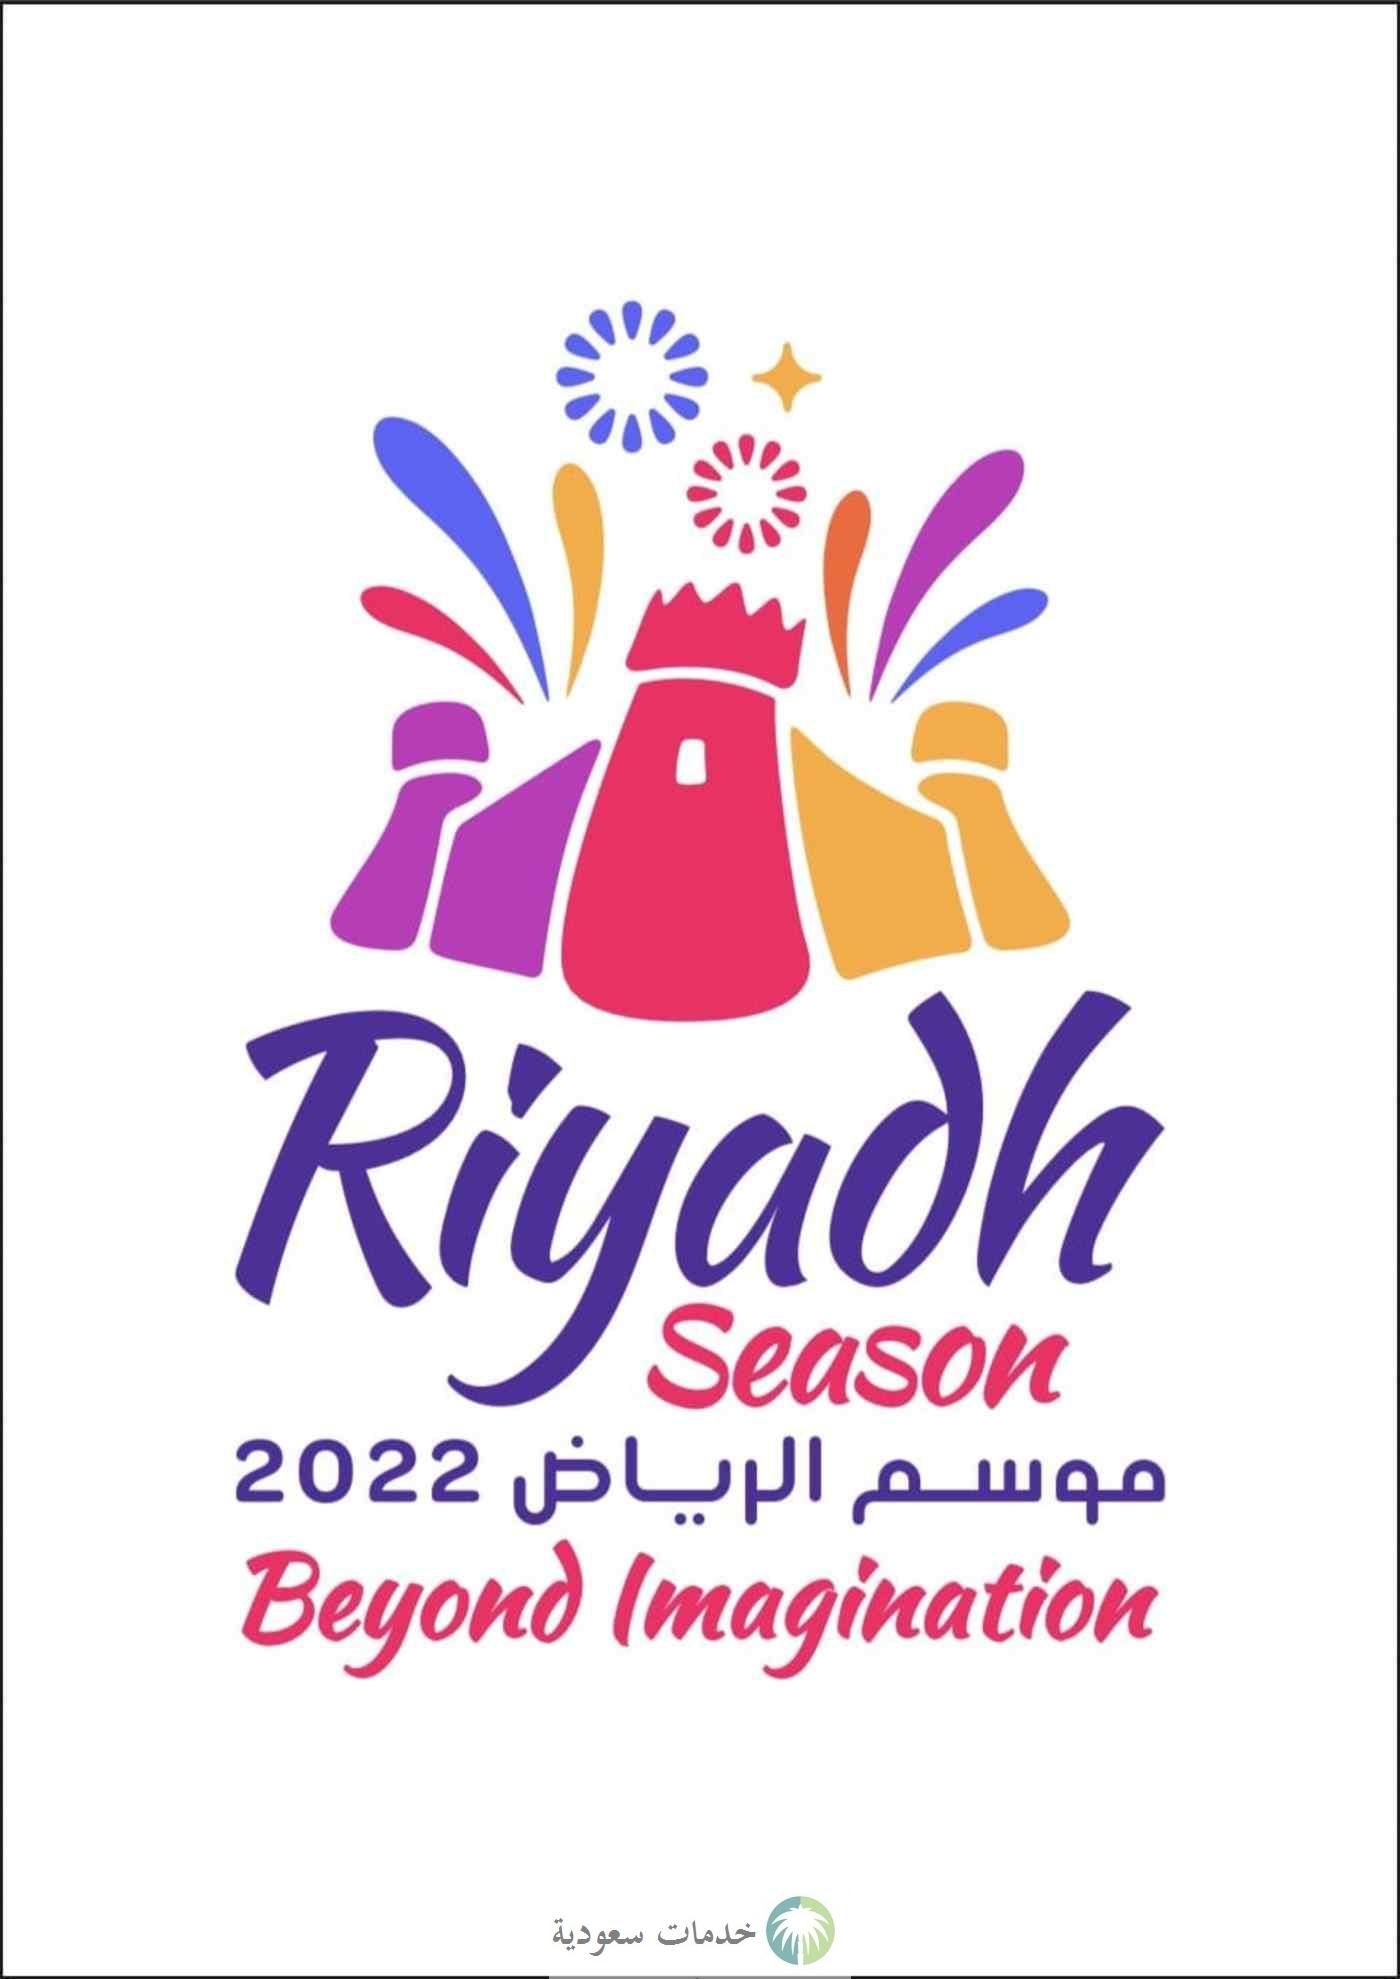 شعار فوق الخيال يزين فعاليات موسم الرياض 2022 في 15 منطقة أبرزها بوليفارد ولد